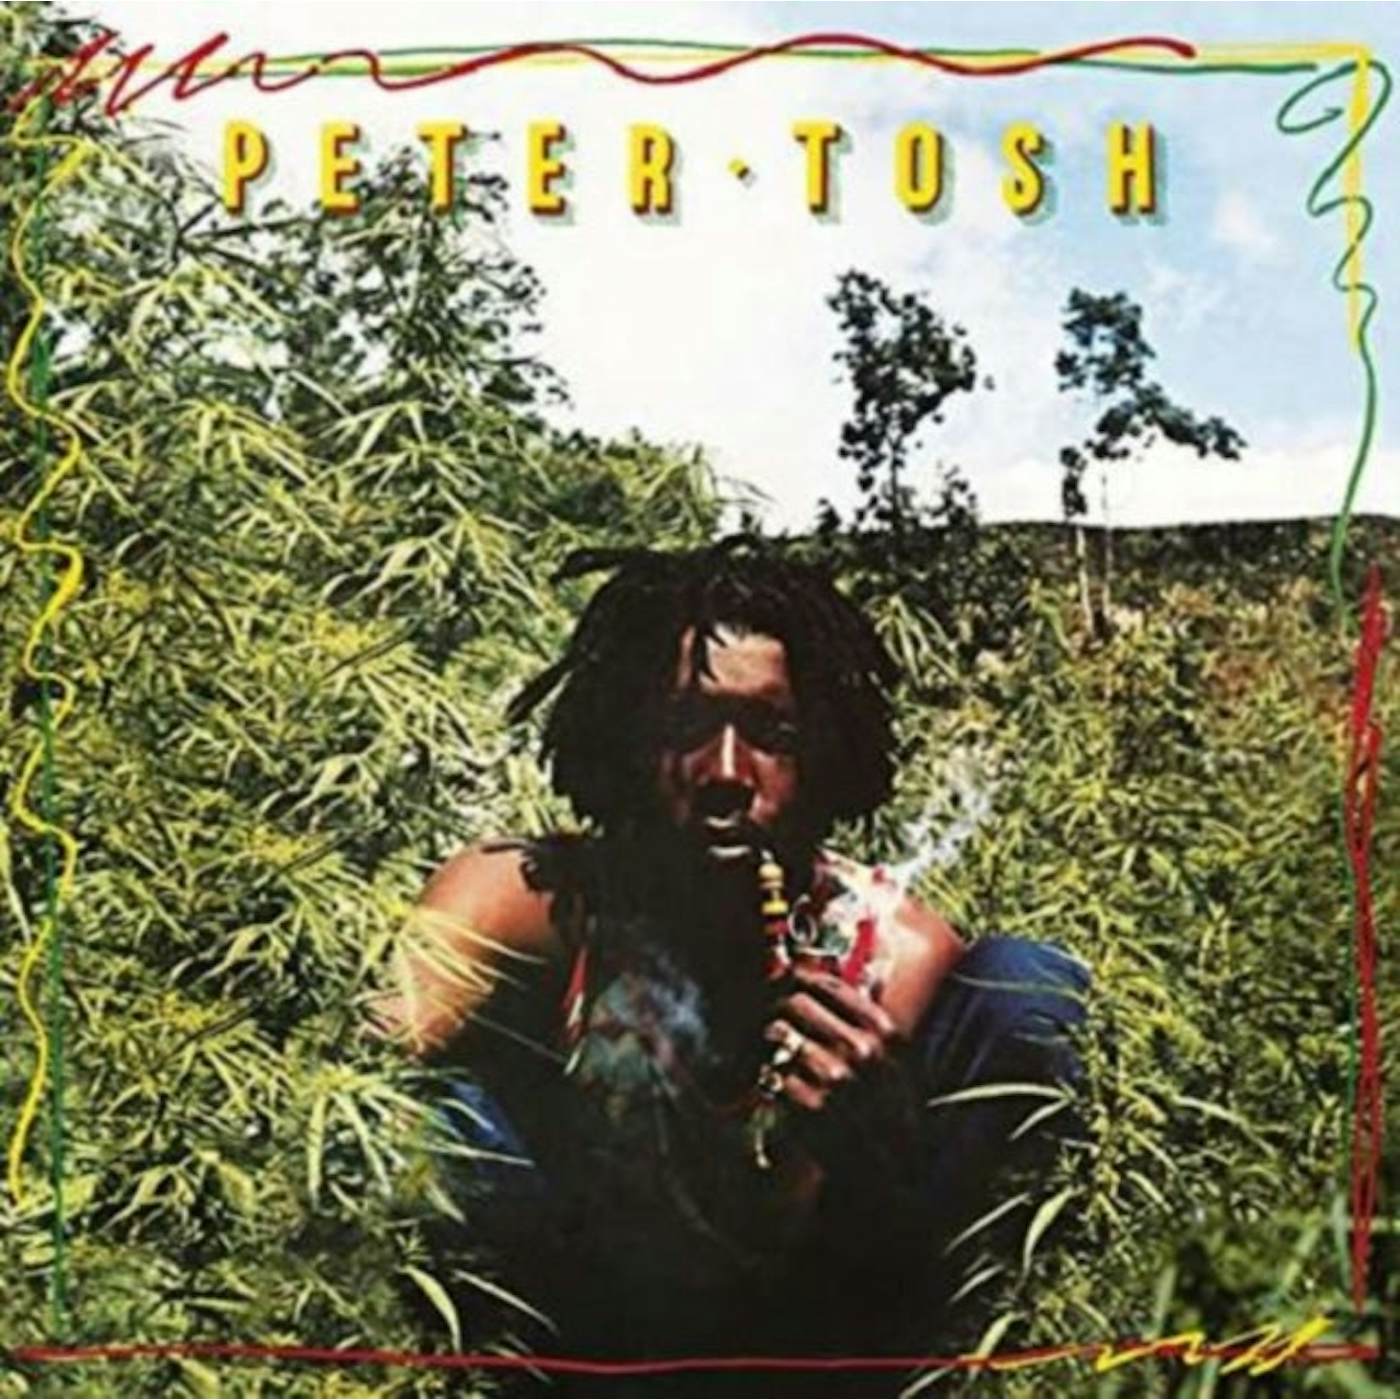 Peter Tosh LP Vinyl Record - Legalize It